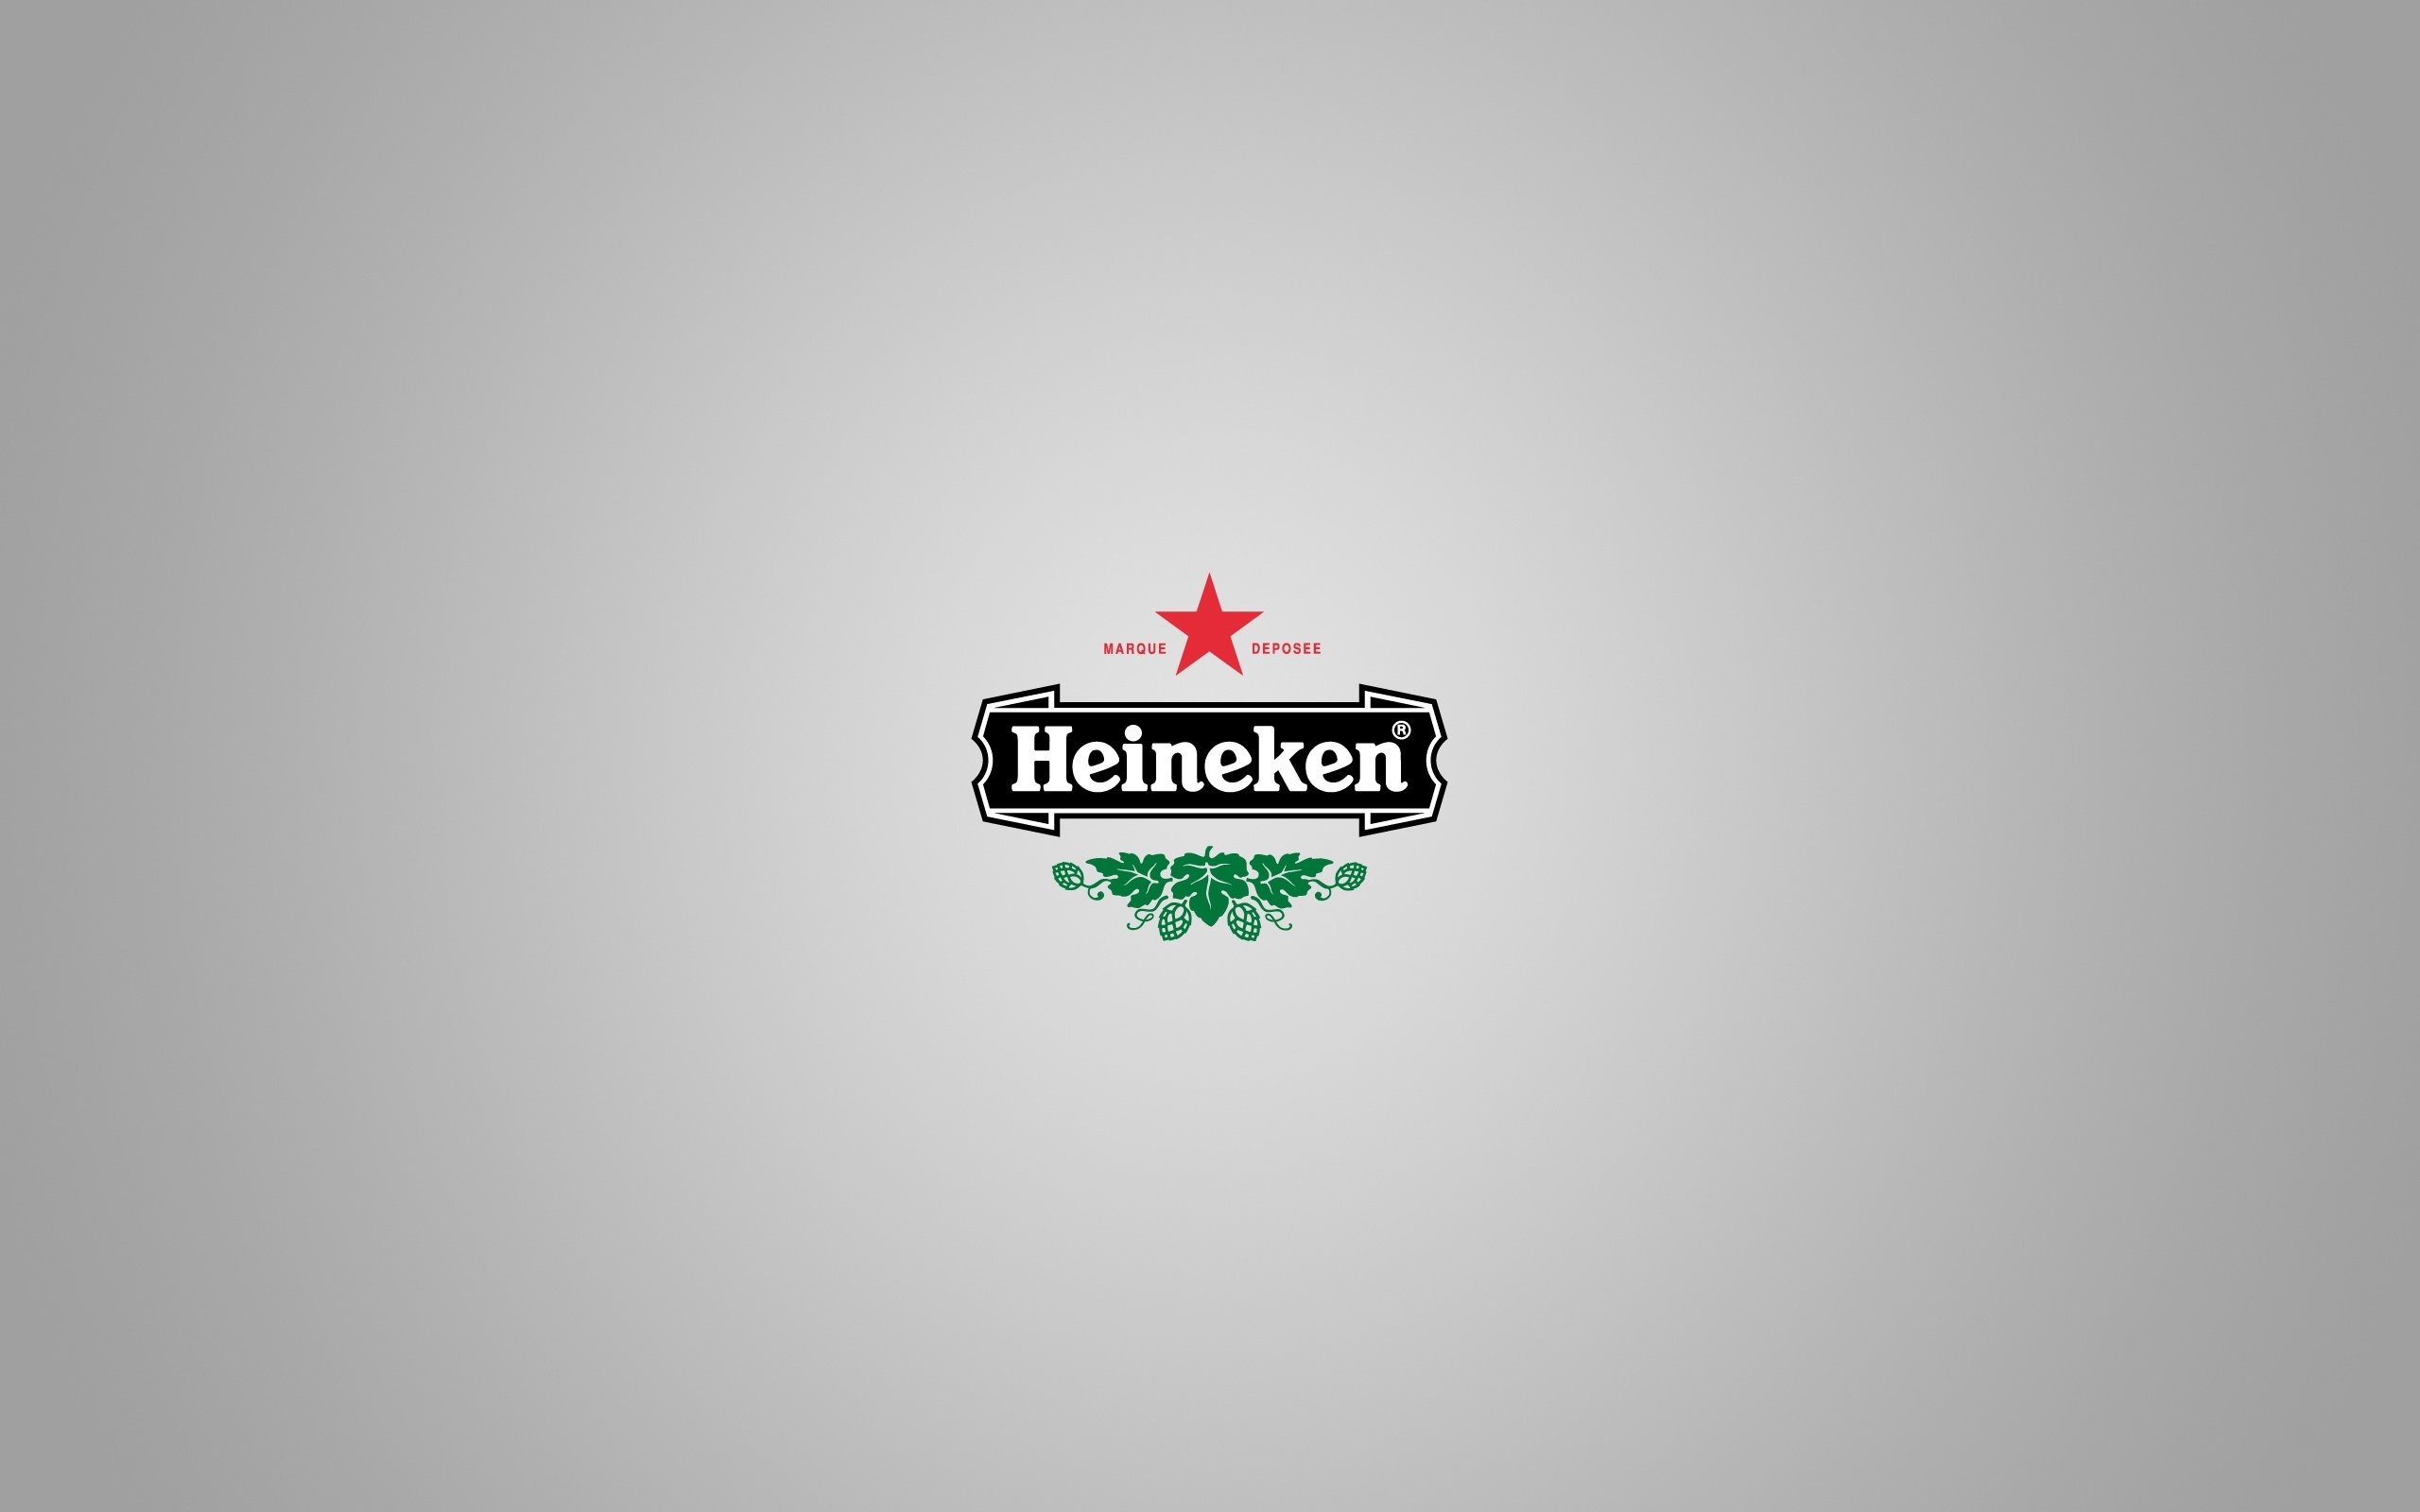 Awesome Heineken free wallpaper ID:151103 for hd 2560x1600 desktop